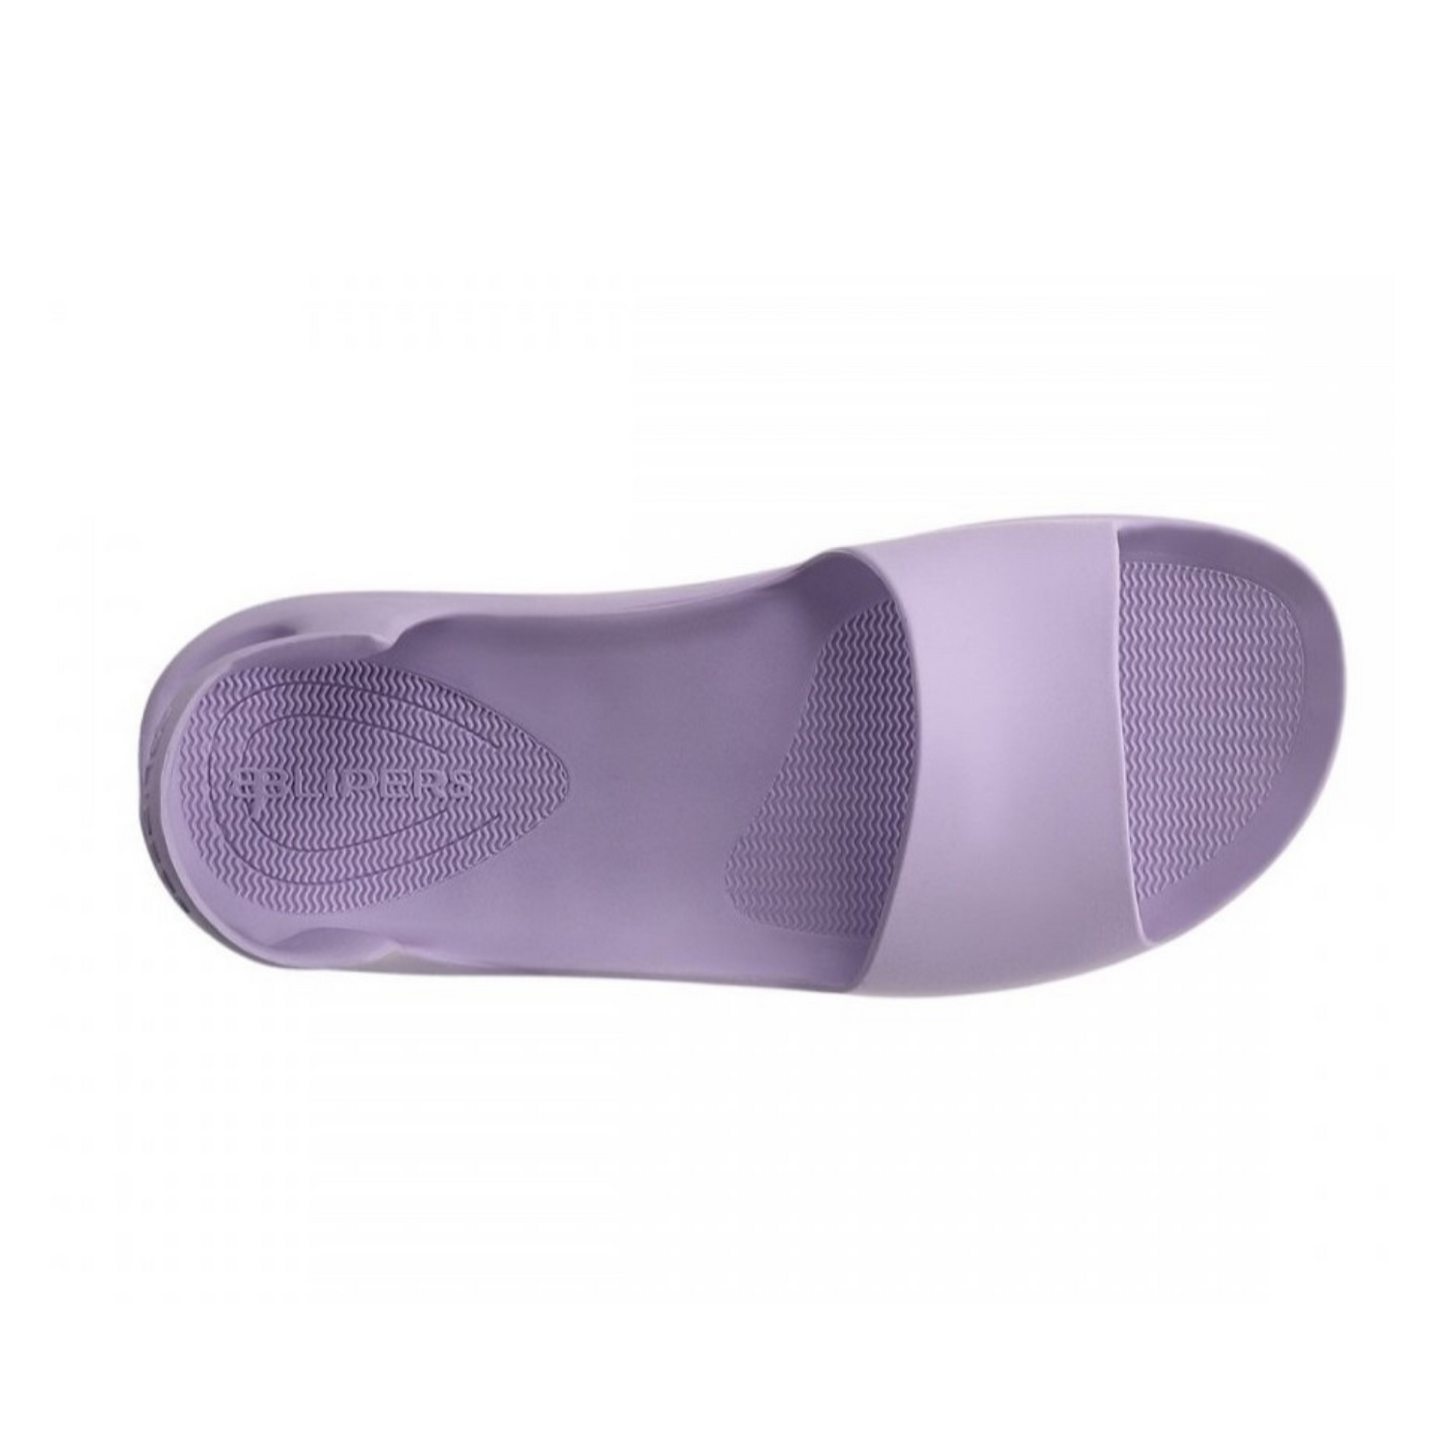 Sandalo Blipers